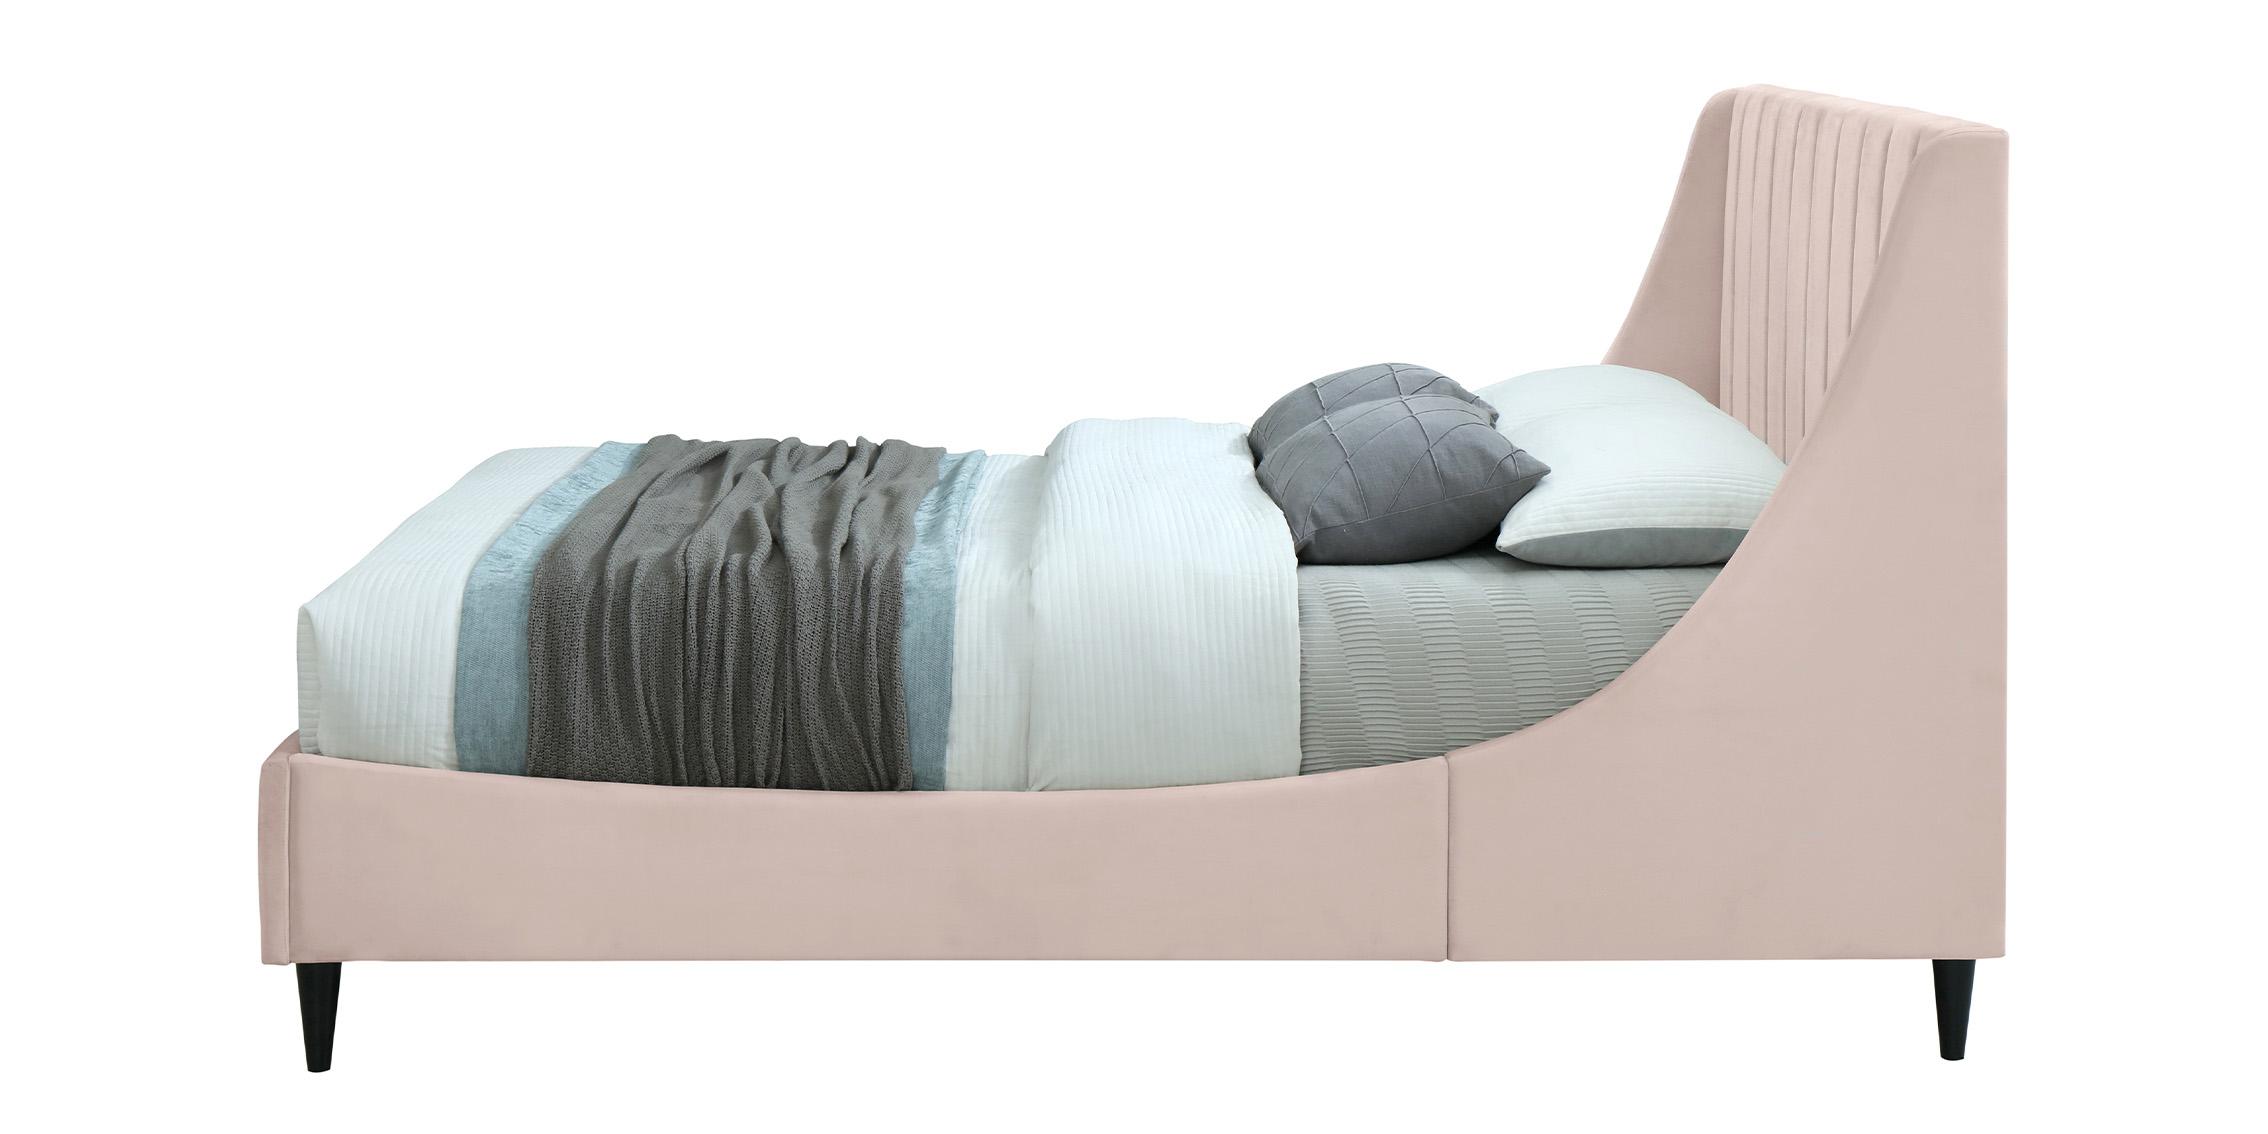 

    
EvaPink-F Meridian Furniture Platform Bed
